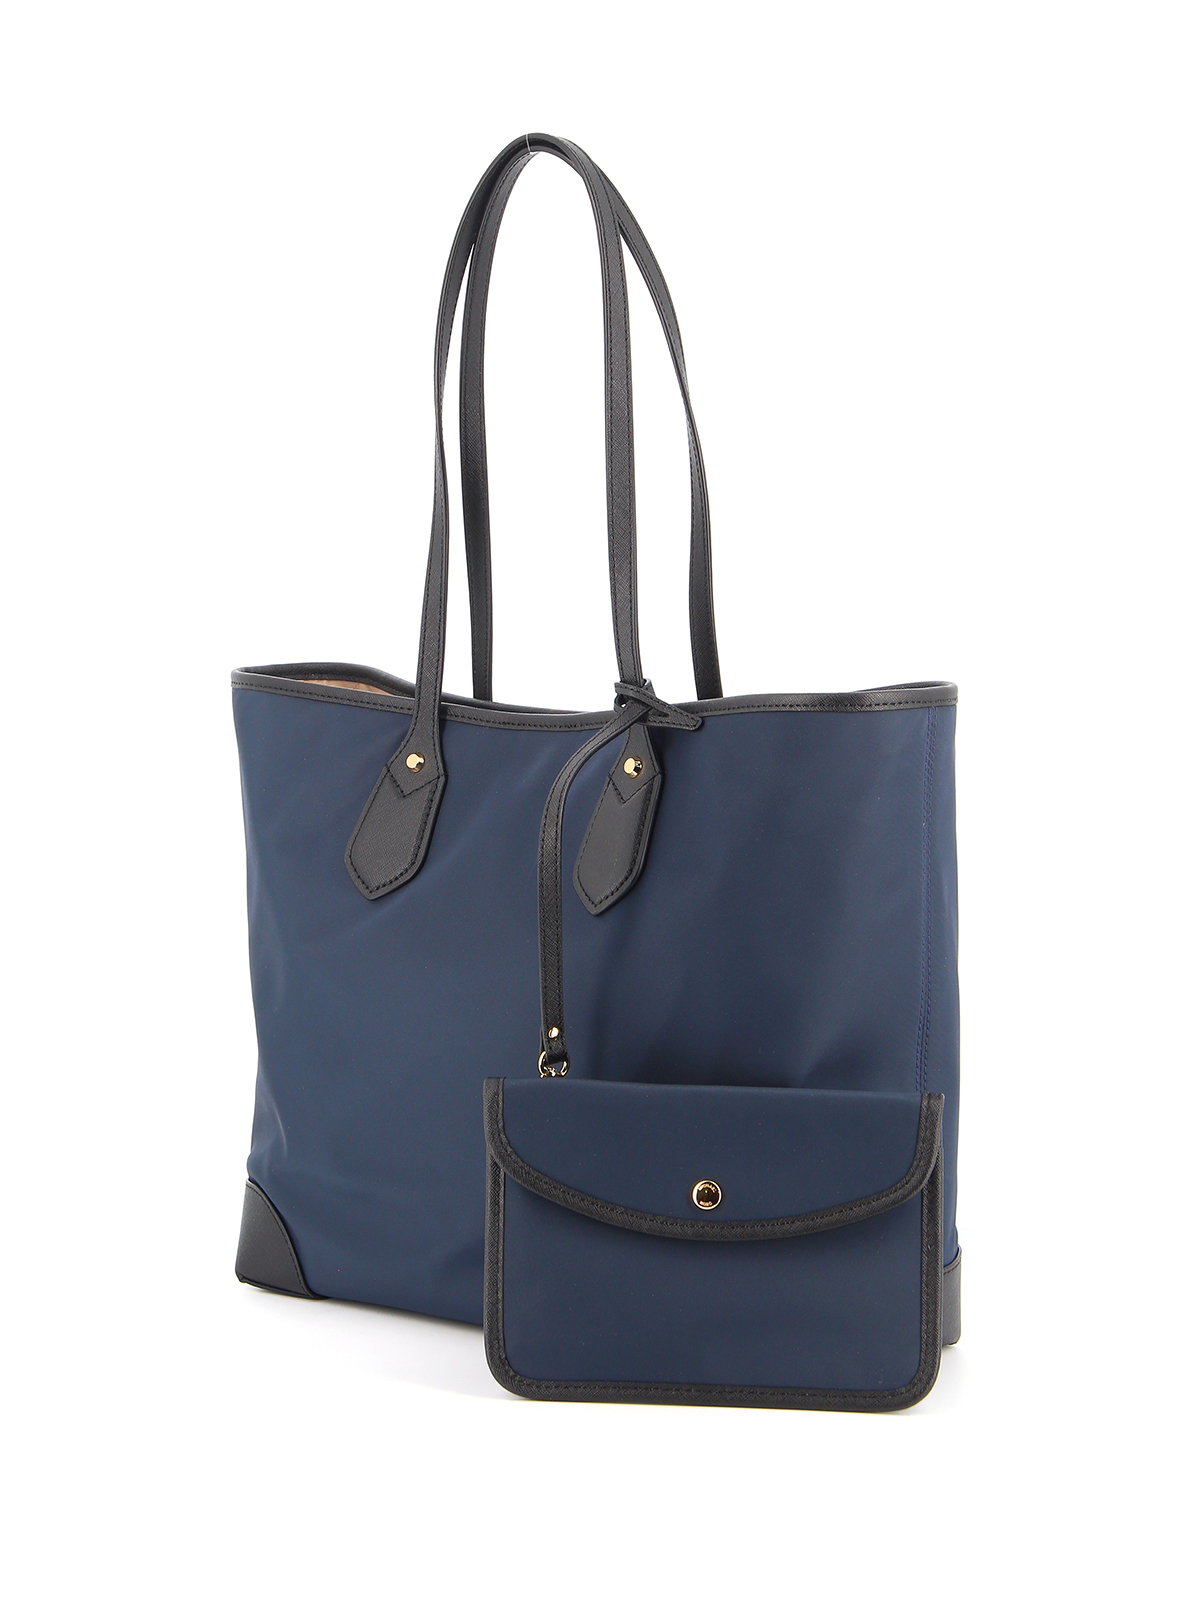 Totes bags Michael Kors - Eva large nylon blue tote bag - 30H9GV0T3C407